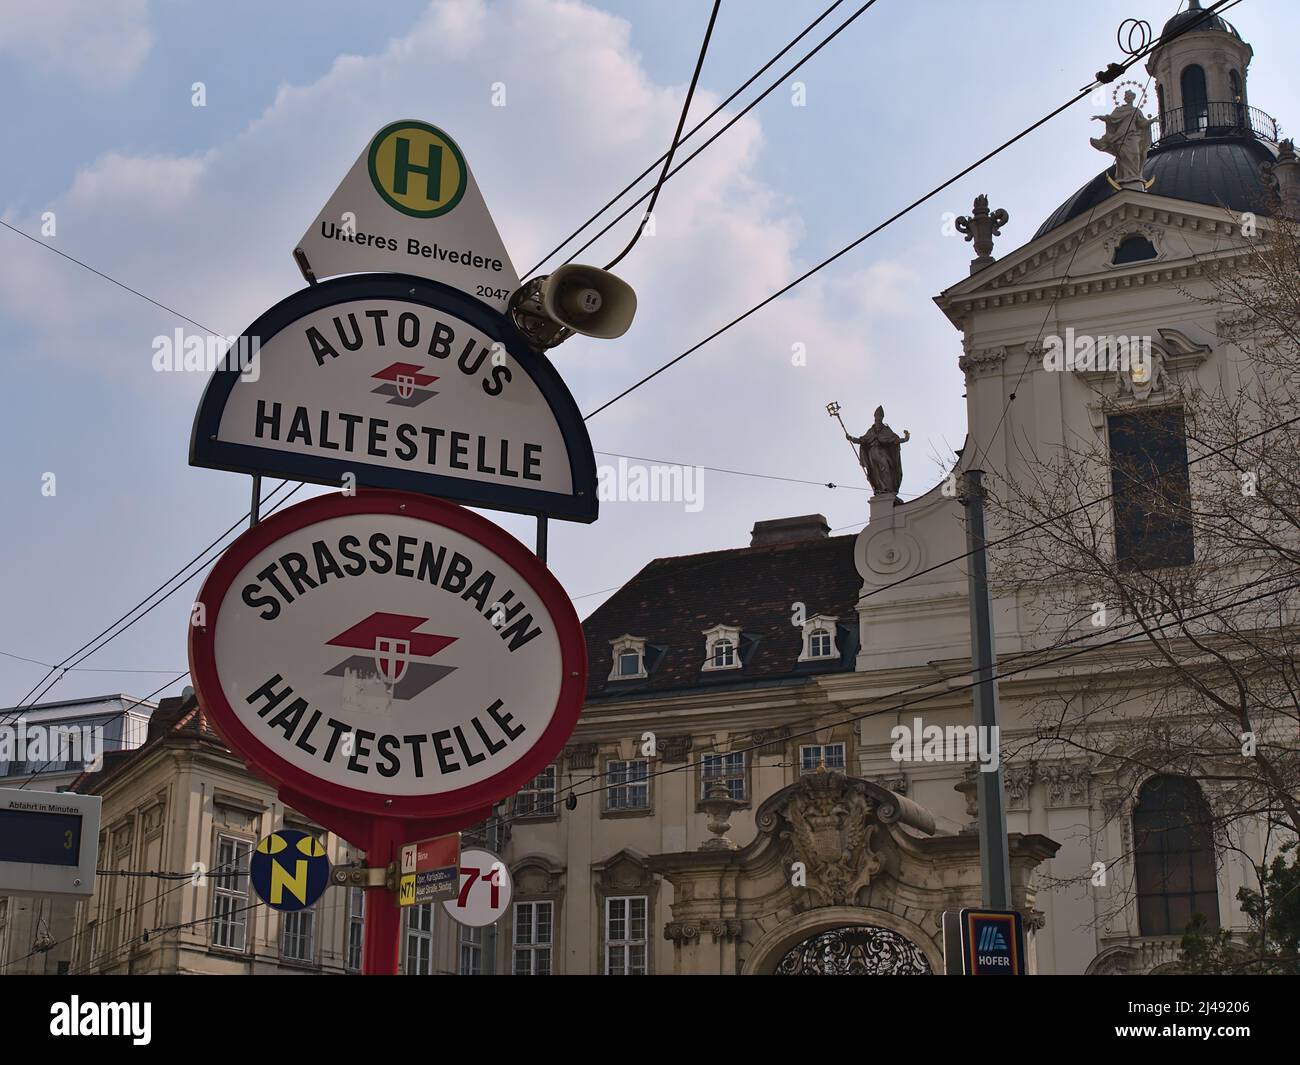 Segnaletica stradale alla stazione degli autobus e del tram Unteres Belvedere nel centro storico di Vienna, Austria con il logo di Wiener Linien e vecchio edificio. Foto Stock